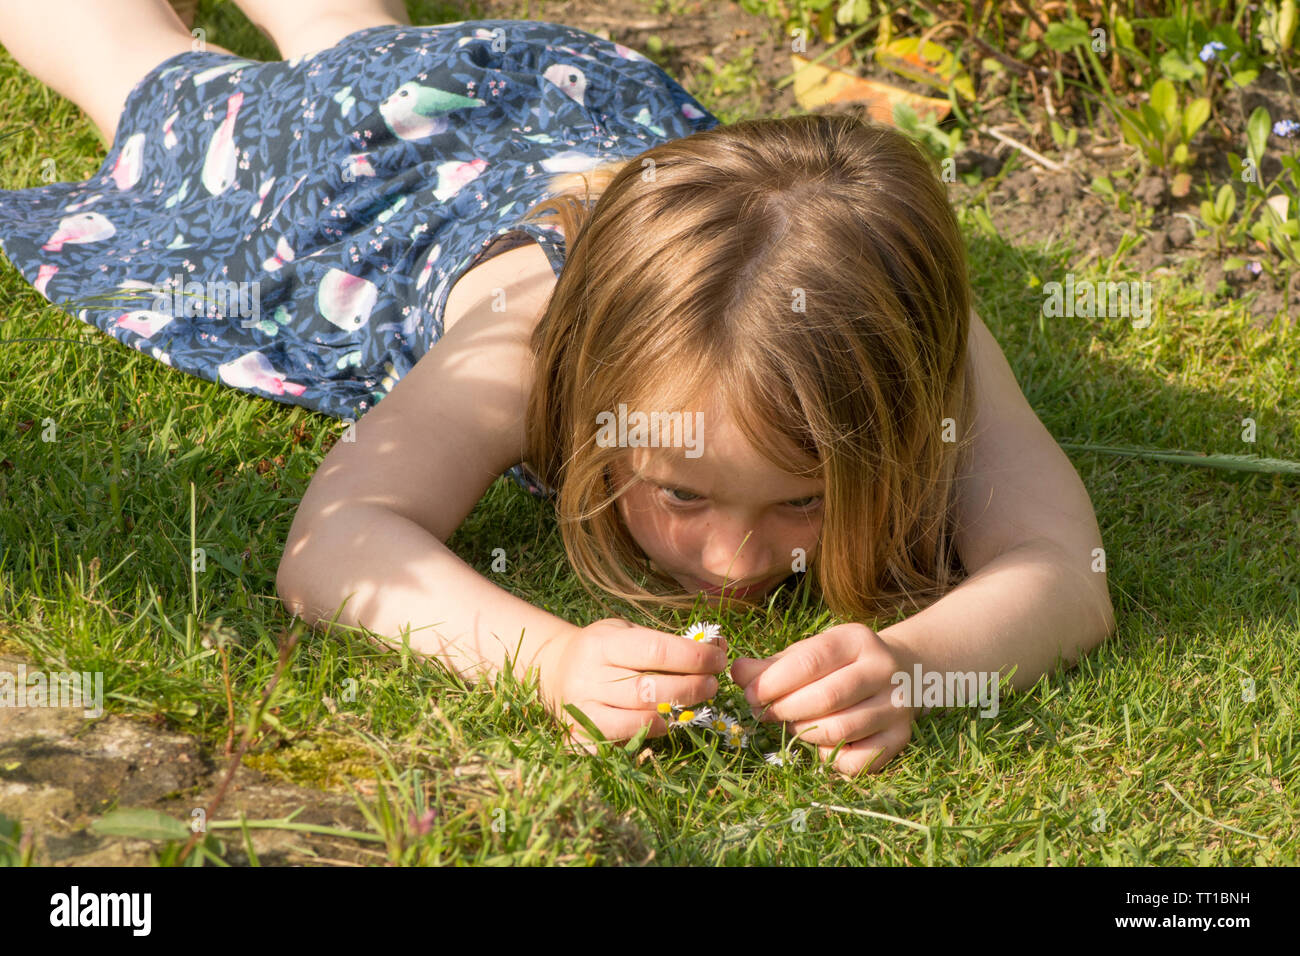 Niña de tres años sentando en el pasto, recolección de flores, margaritas, concentrarse en el jardín. Foto de stock